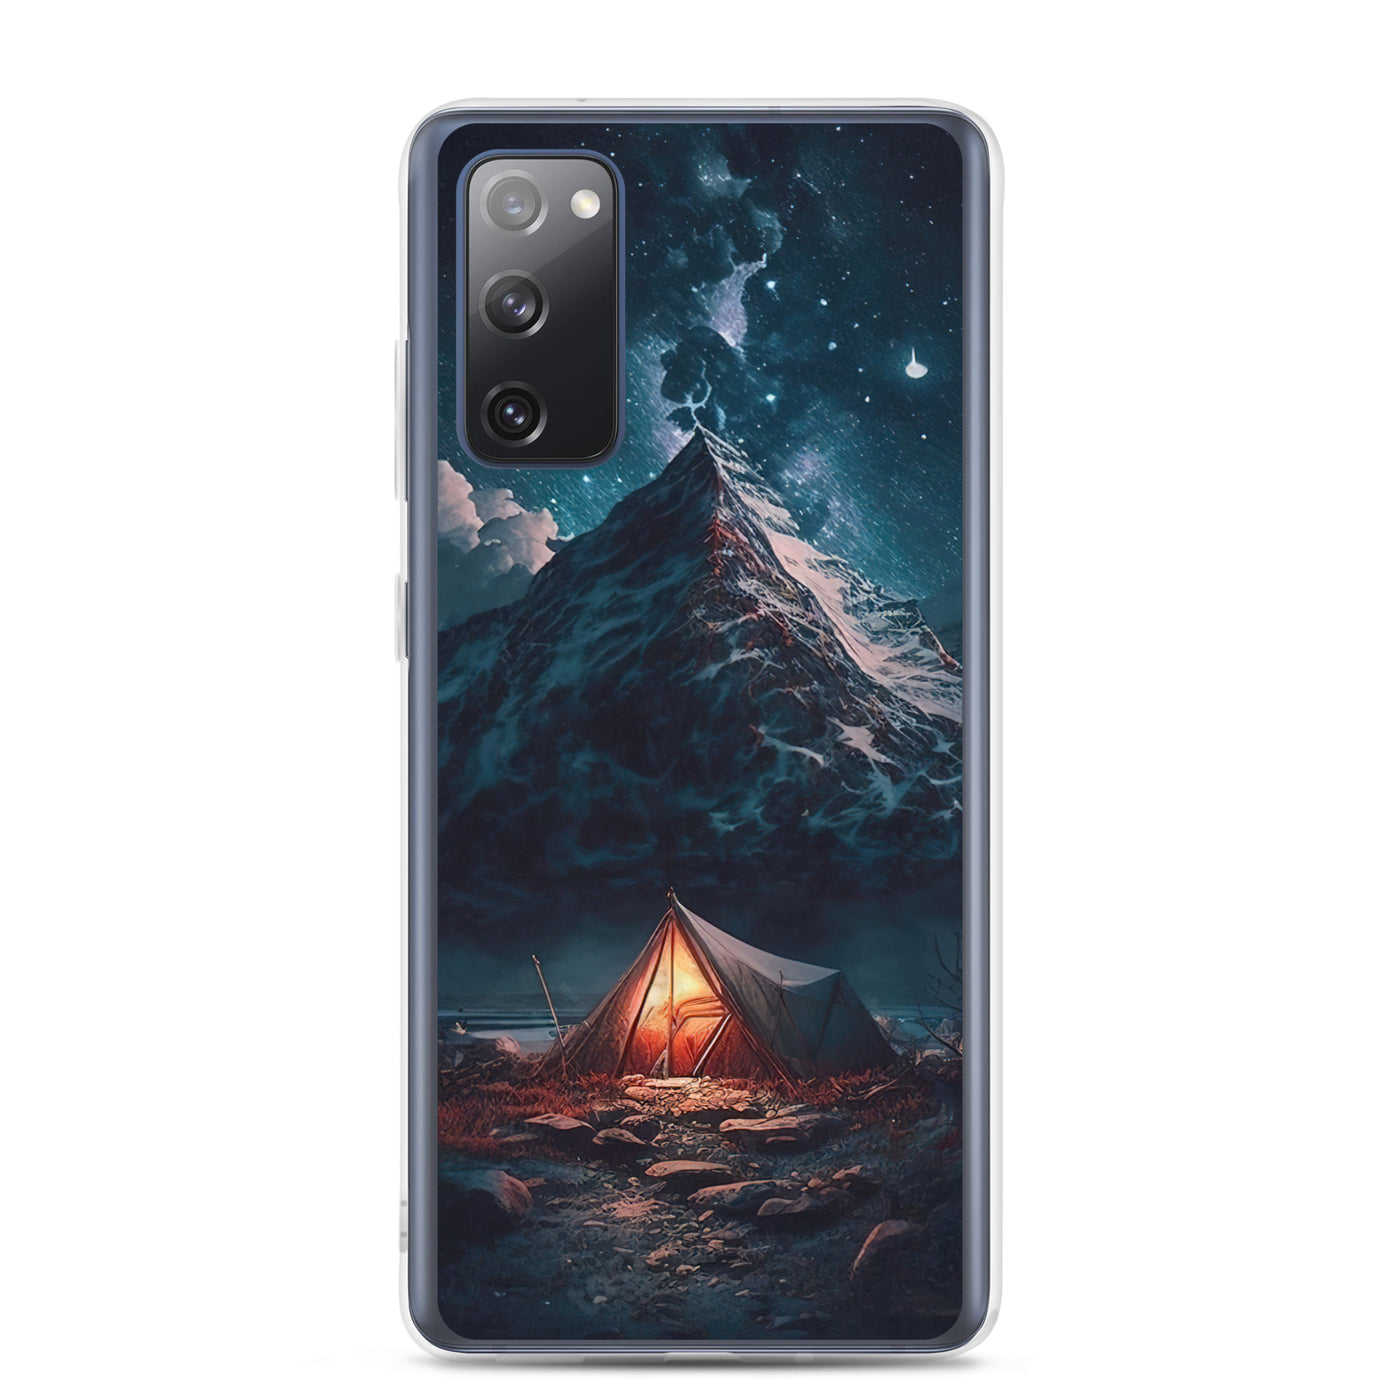 Zelt und Berg in der Nacht - Sterne am Himmel - Landschaftsmalerei - Samsung Schutzhülle (durchsichtig) camping xxx Samsung Galaxy S20 FE